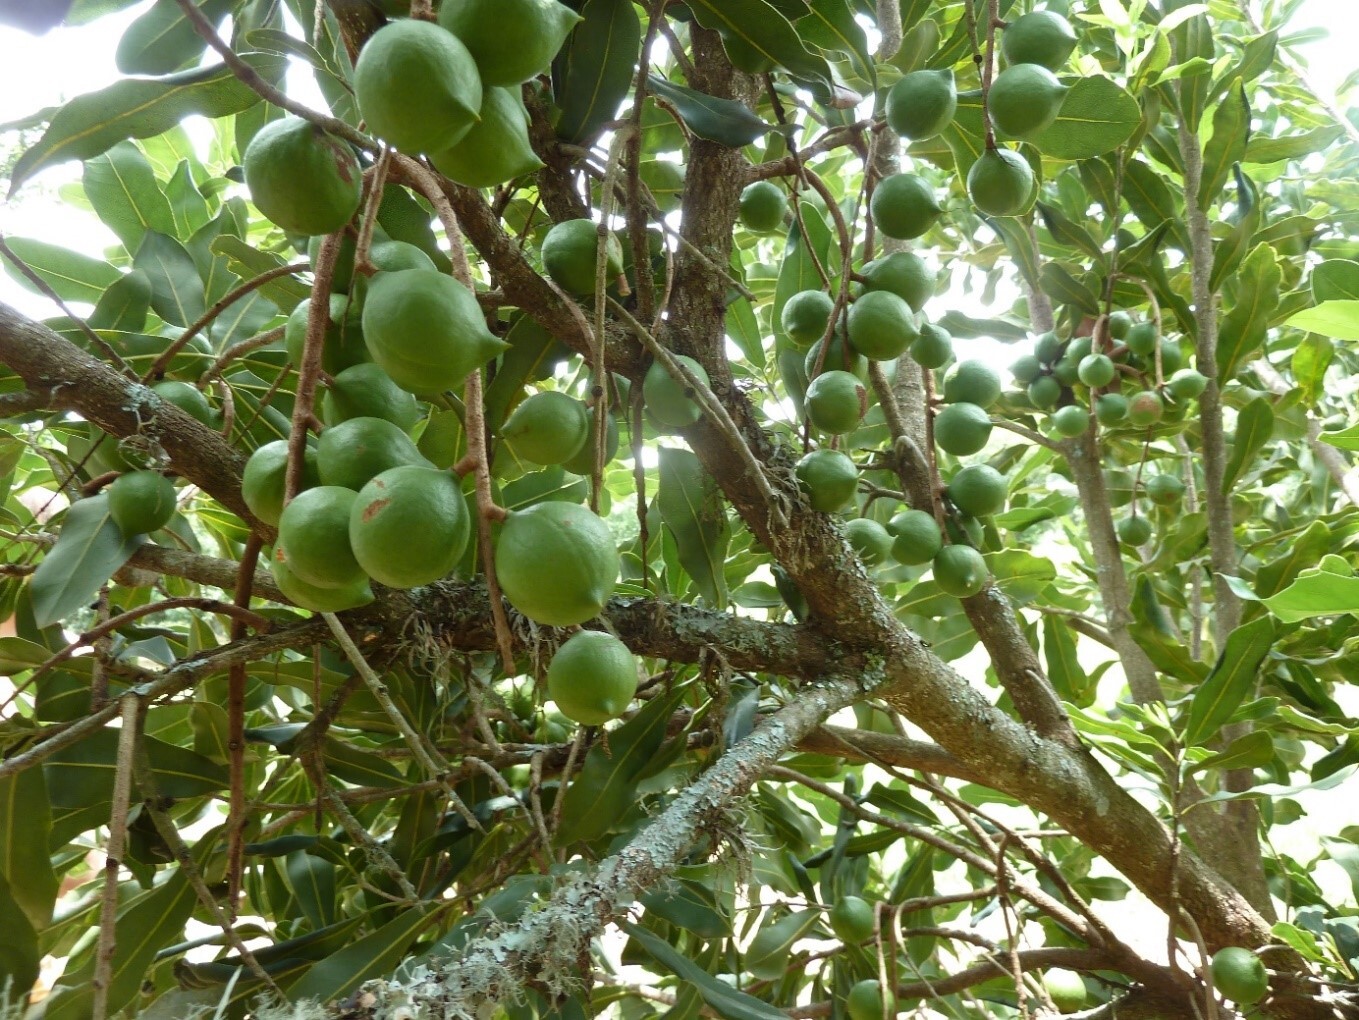 Die unreifen Nüsse hängen in Trauben am Baum. Die Bestäubung der Macadamia-Blüten durch Insekten ist essenziell für die Produktion.